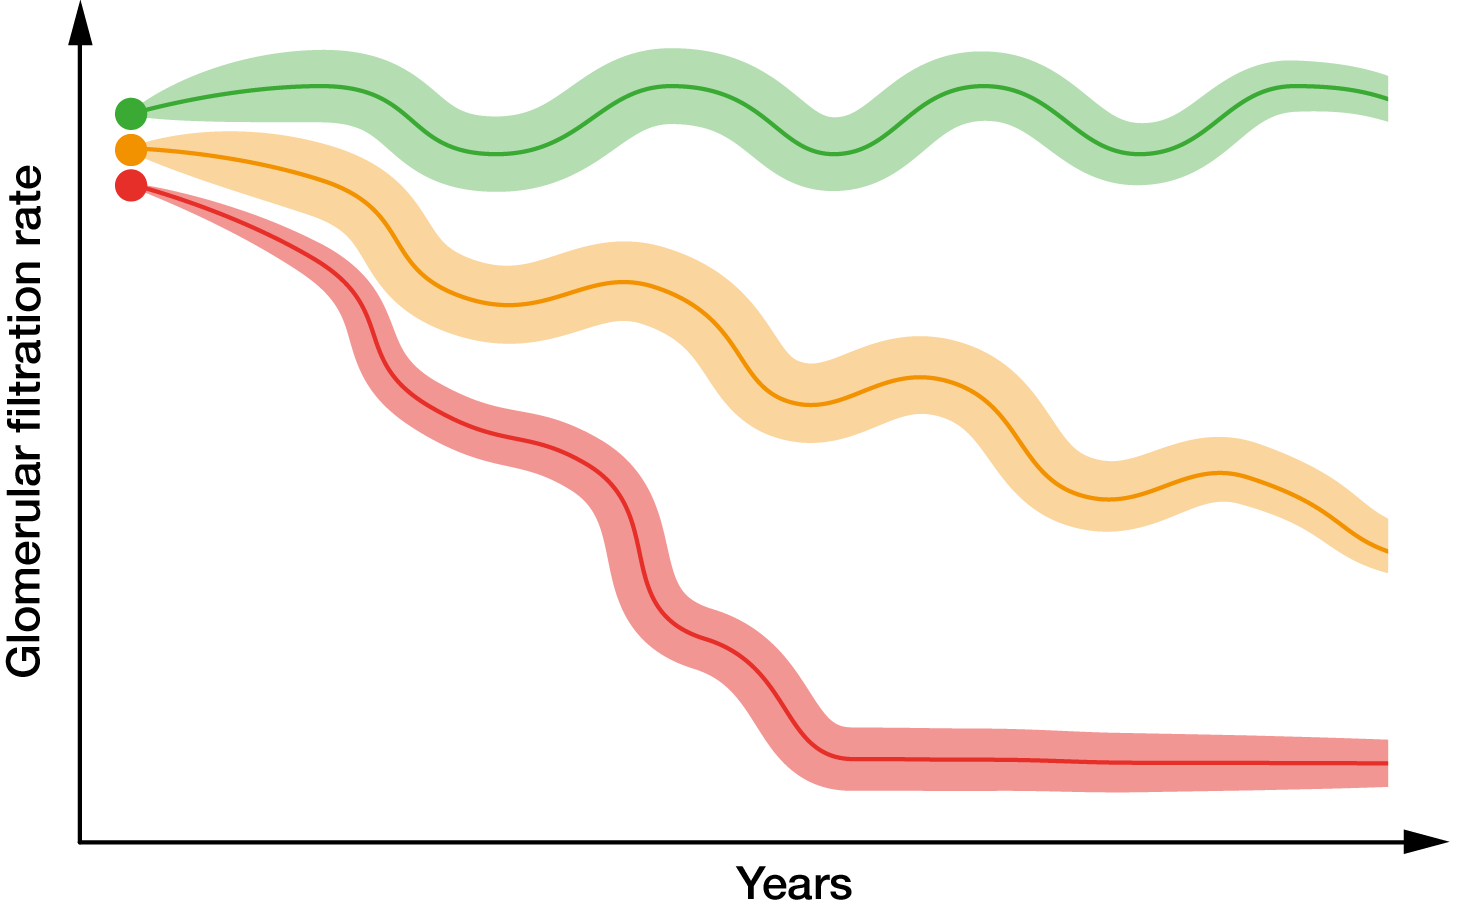 Diagramm mit drei farbigen Verlaufslinien, welche die abnehmende Glomeruläre Filtrationsrate im Laufe der Jahre zeigen.